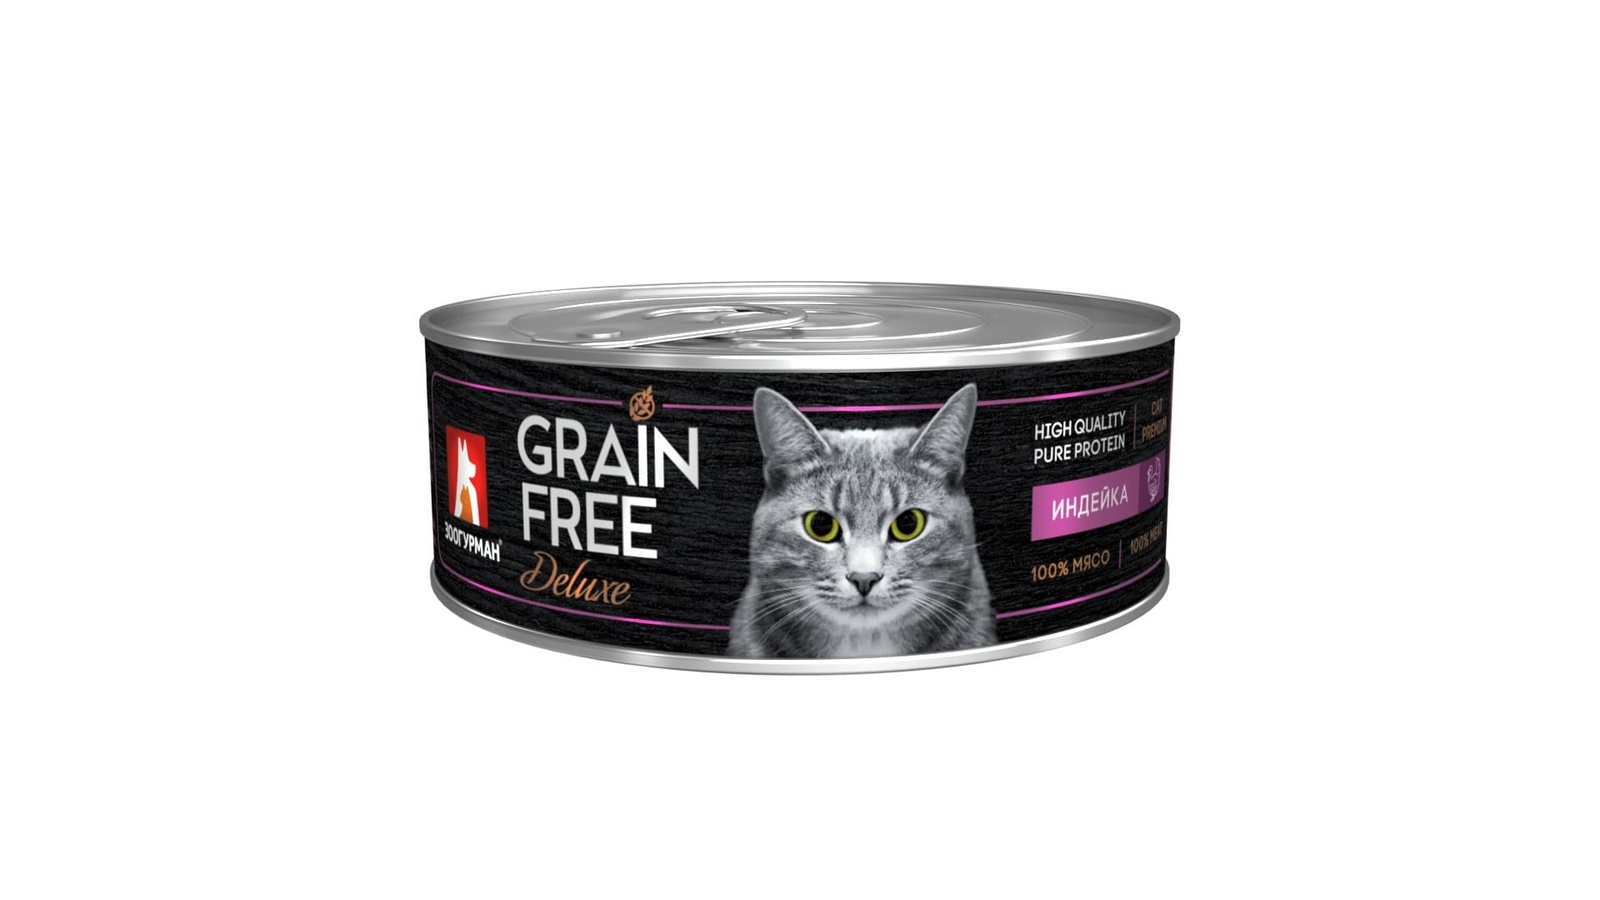 Зоогурман Зоогурман консервы для кошек GRAIN FREE со вкусом индейки (100 г) зоогурман зоогурман паучи для кошек со вкусом говядины с овощами 85 г